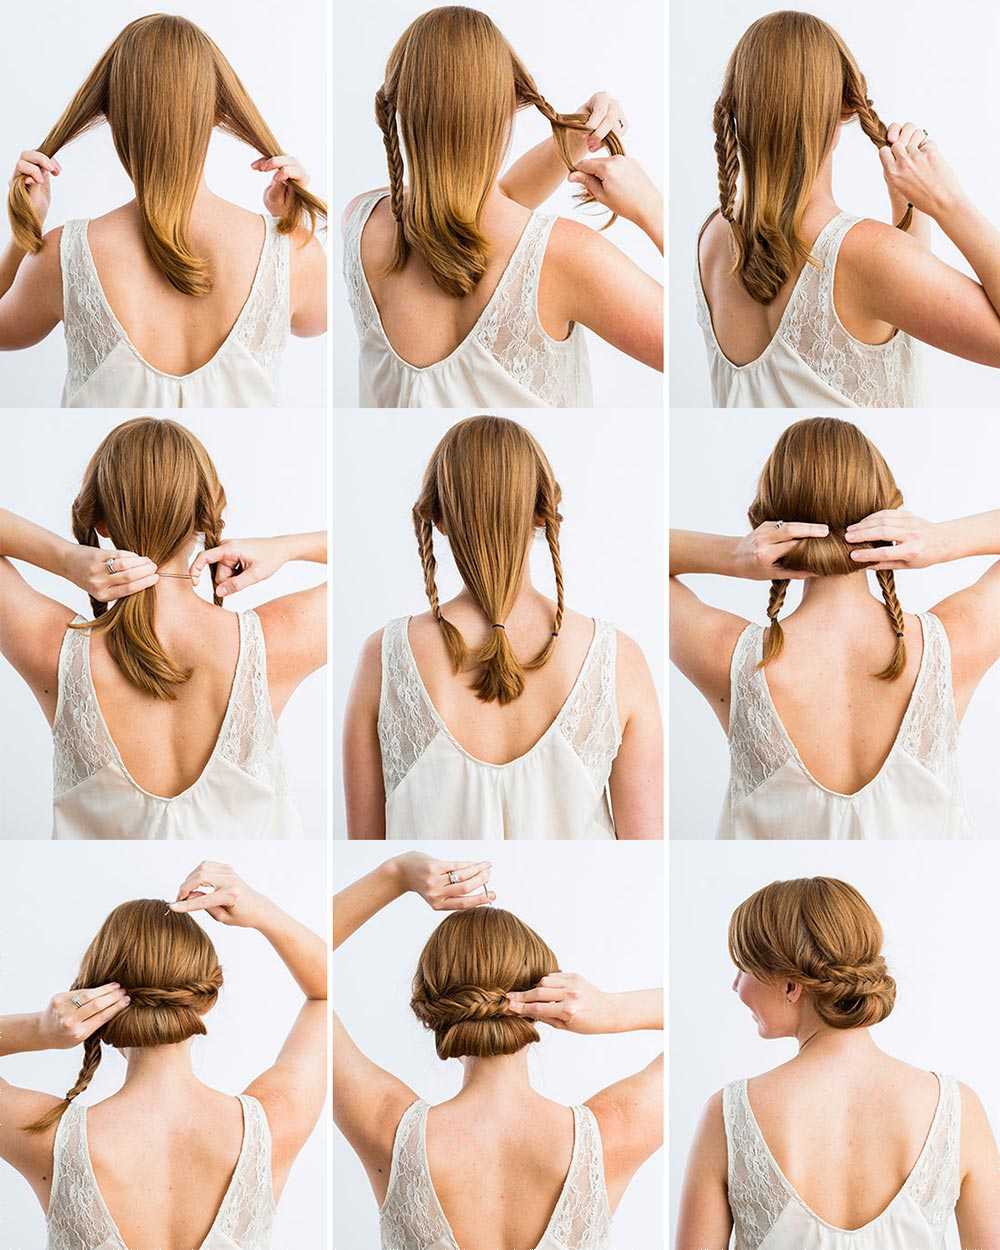 Как сделать высокую прическу на средние и длинные волосы 10 модных причесок с фото, которые подходят как для дома, так и для вечеринки или работы